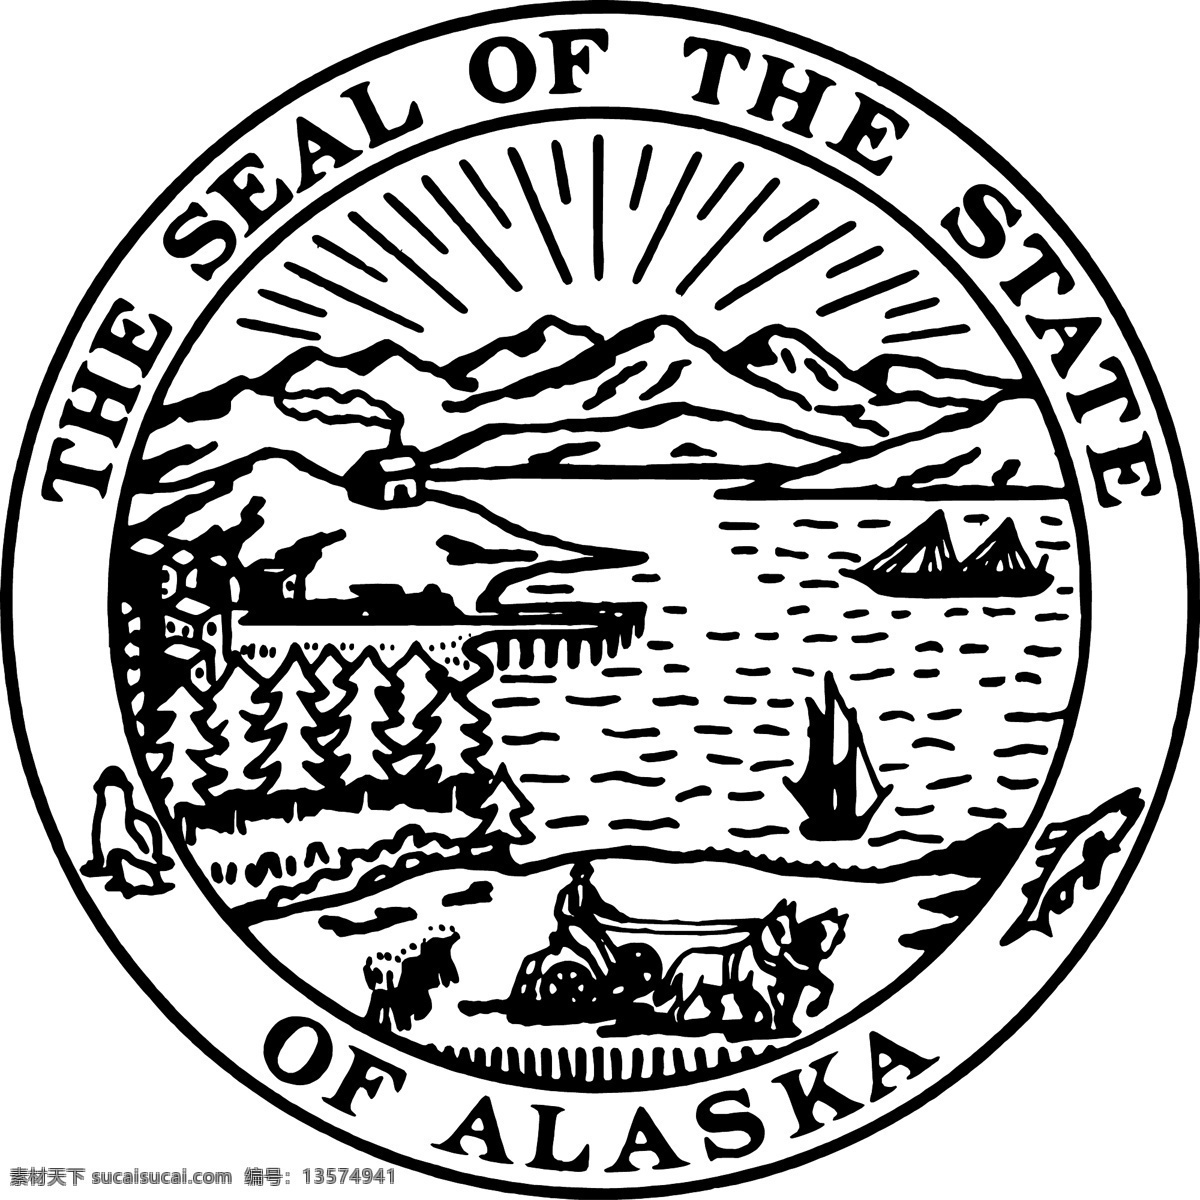 阿拉斯加州 密封 阿拉斯加 标志 自由 状态 psd源文件 logo设计